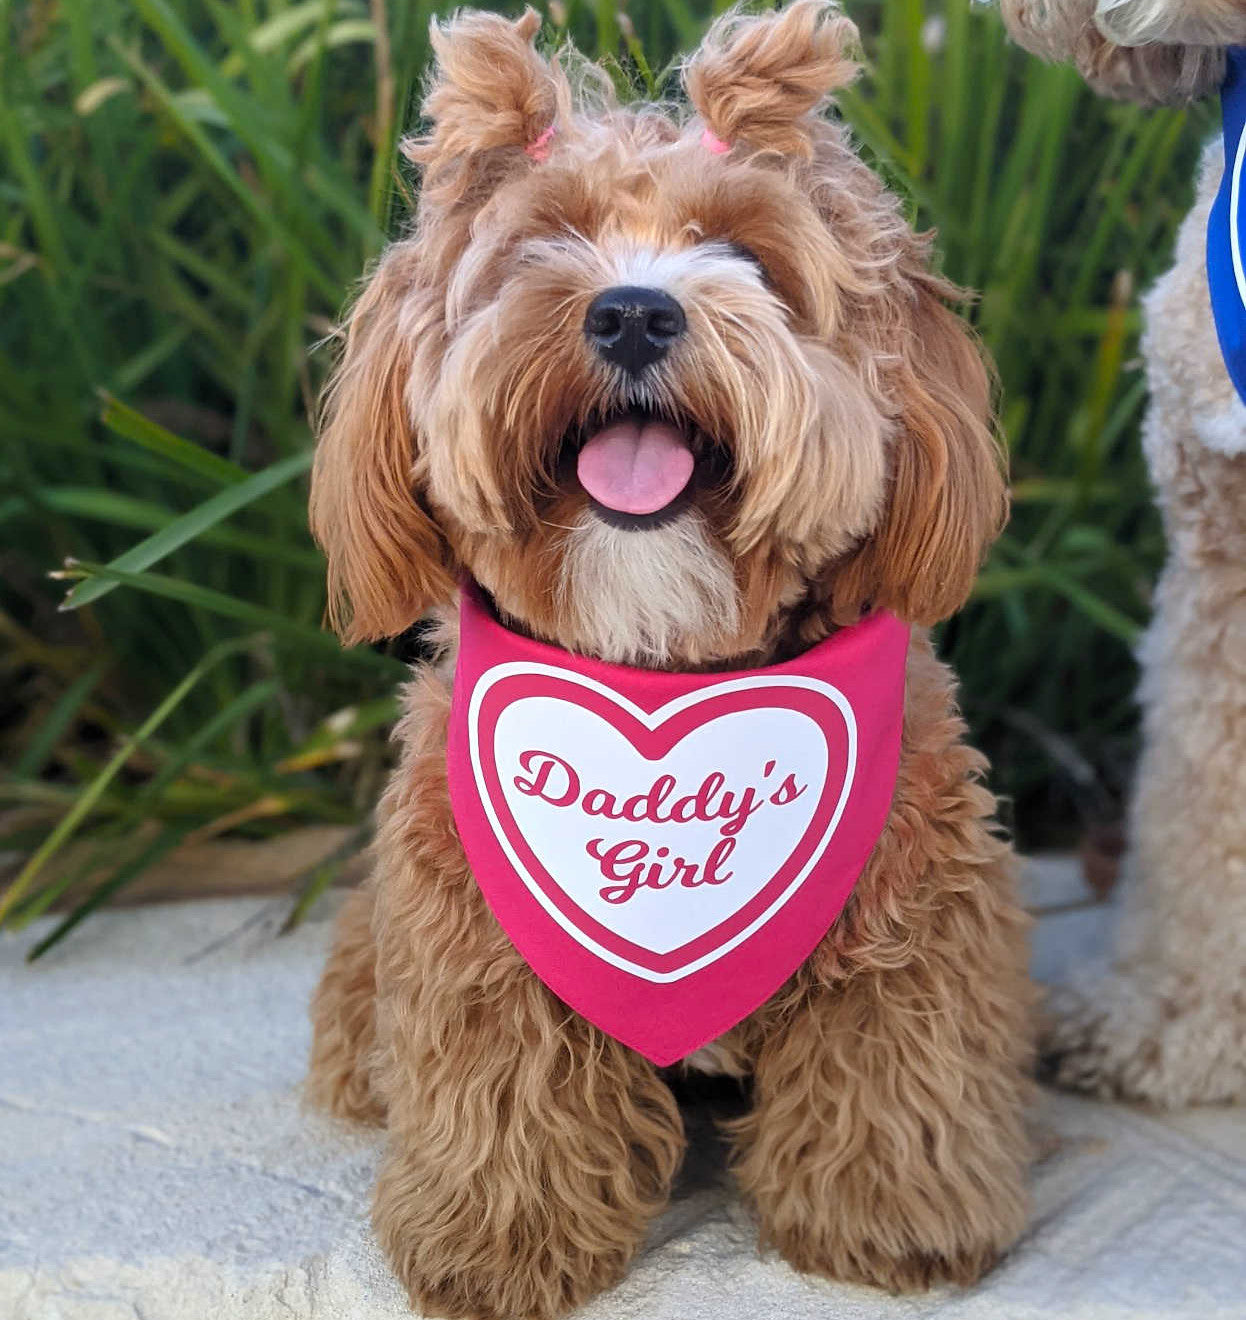 Pink heart XOXO Myko - Daddy's girl bandana on cute bichoodle